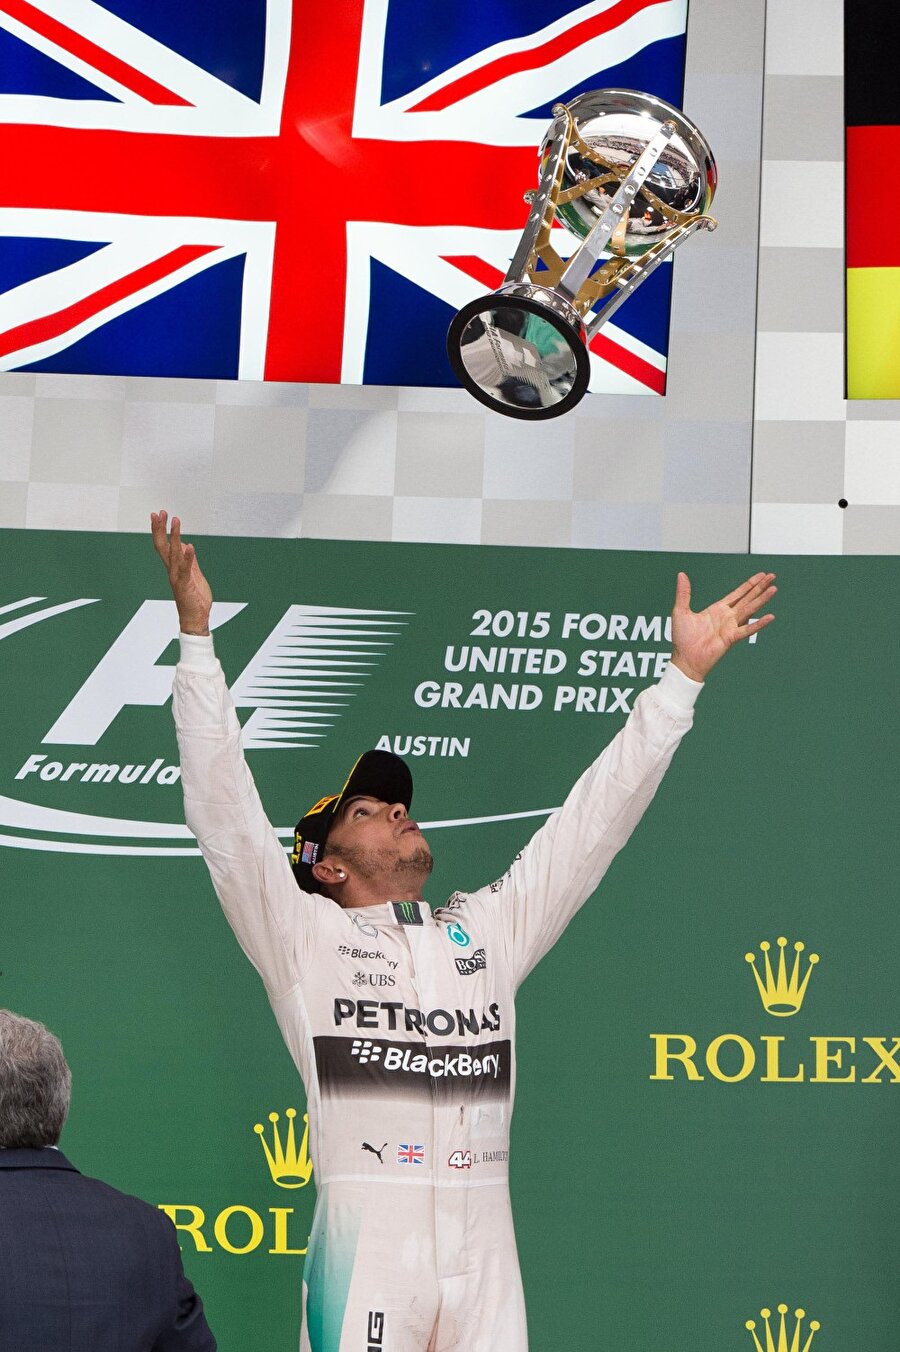 Hamilton sezonun bitimine iki yarış kala şampiyonluğunu ilan etti.